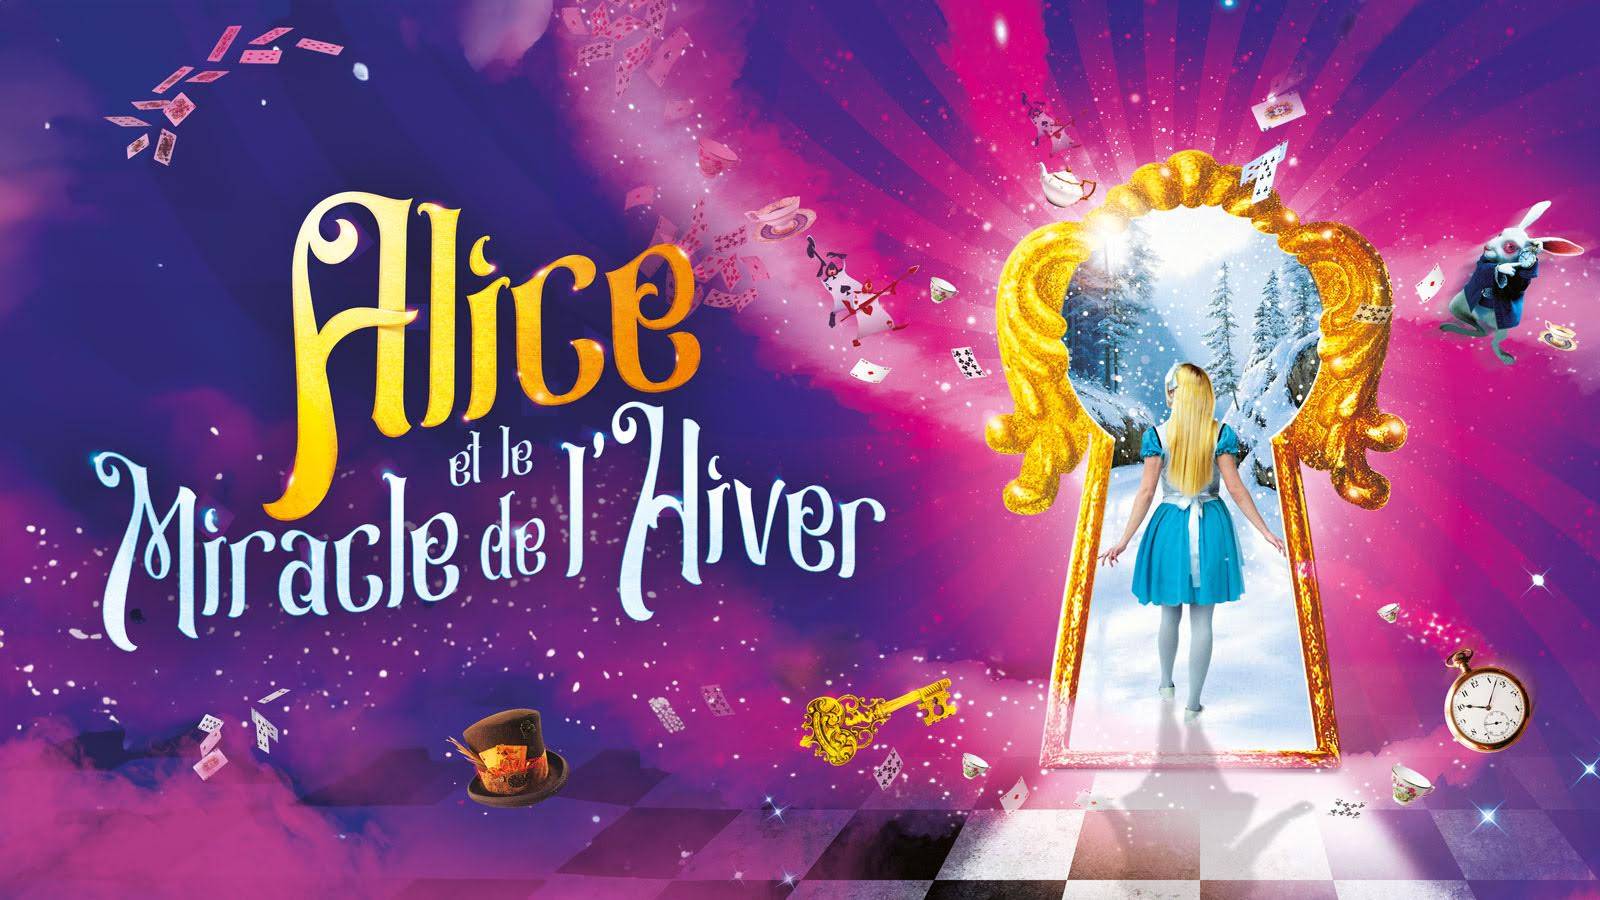 Alice et le miracle de l'hiver